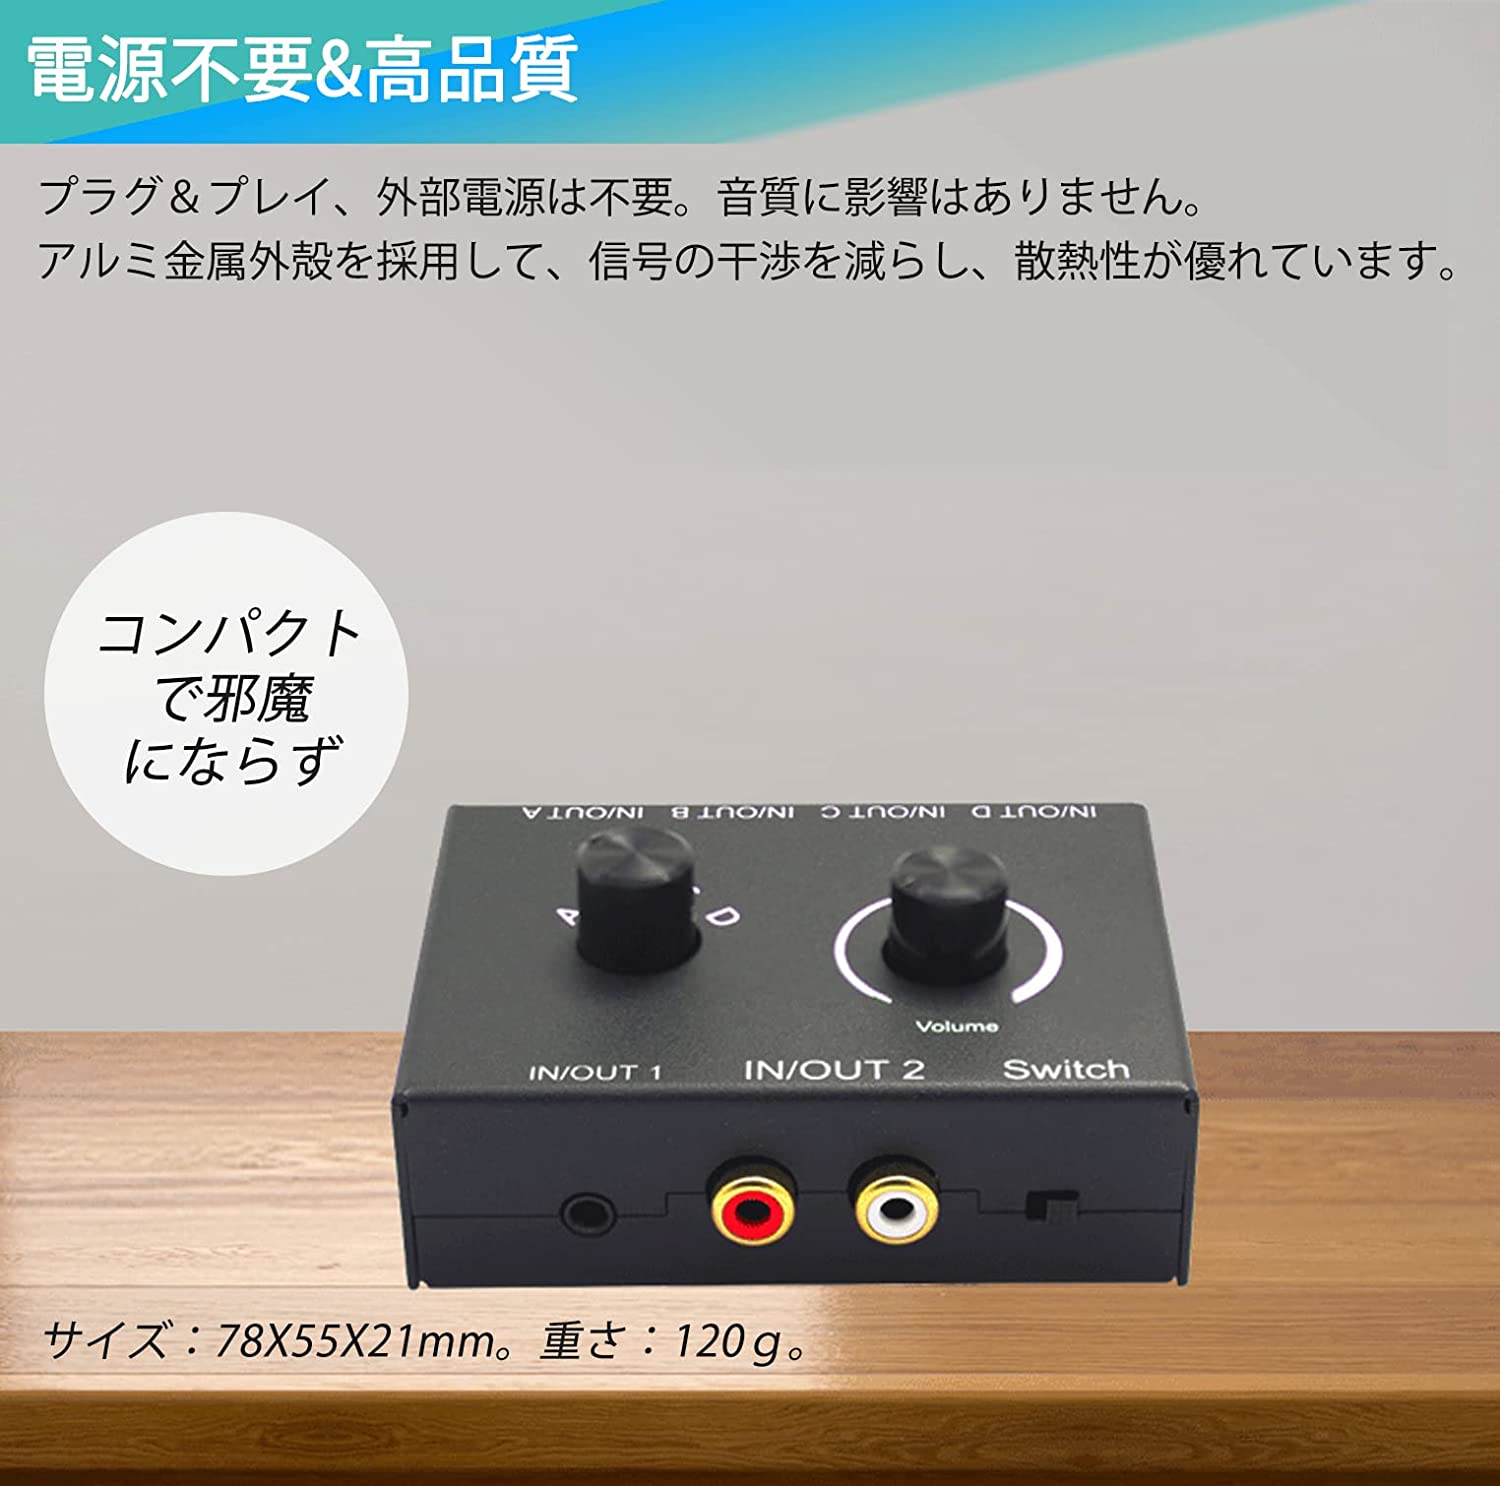  аудио селектор 4 ввод 2 мощность /4 мощность 2 ввод переключатель ES-Tune интерактивный RCA стерео звук переключатель .- сплиттер источник питания не необходимо 3.5mm аудио кабель есть 